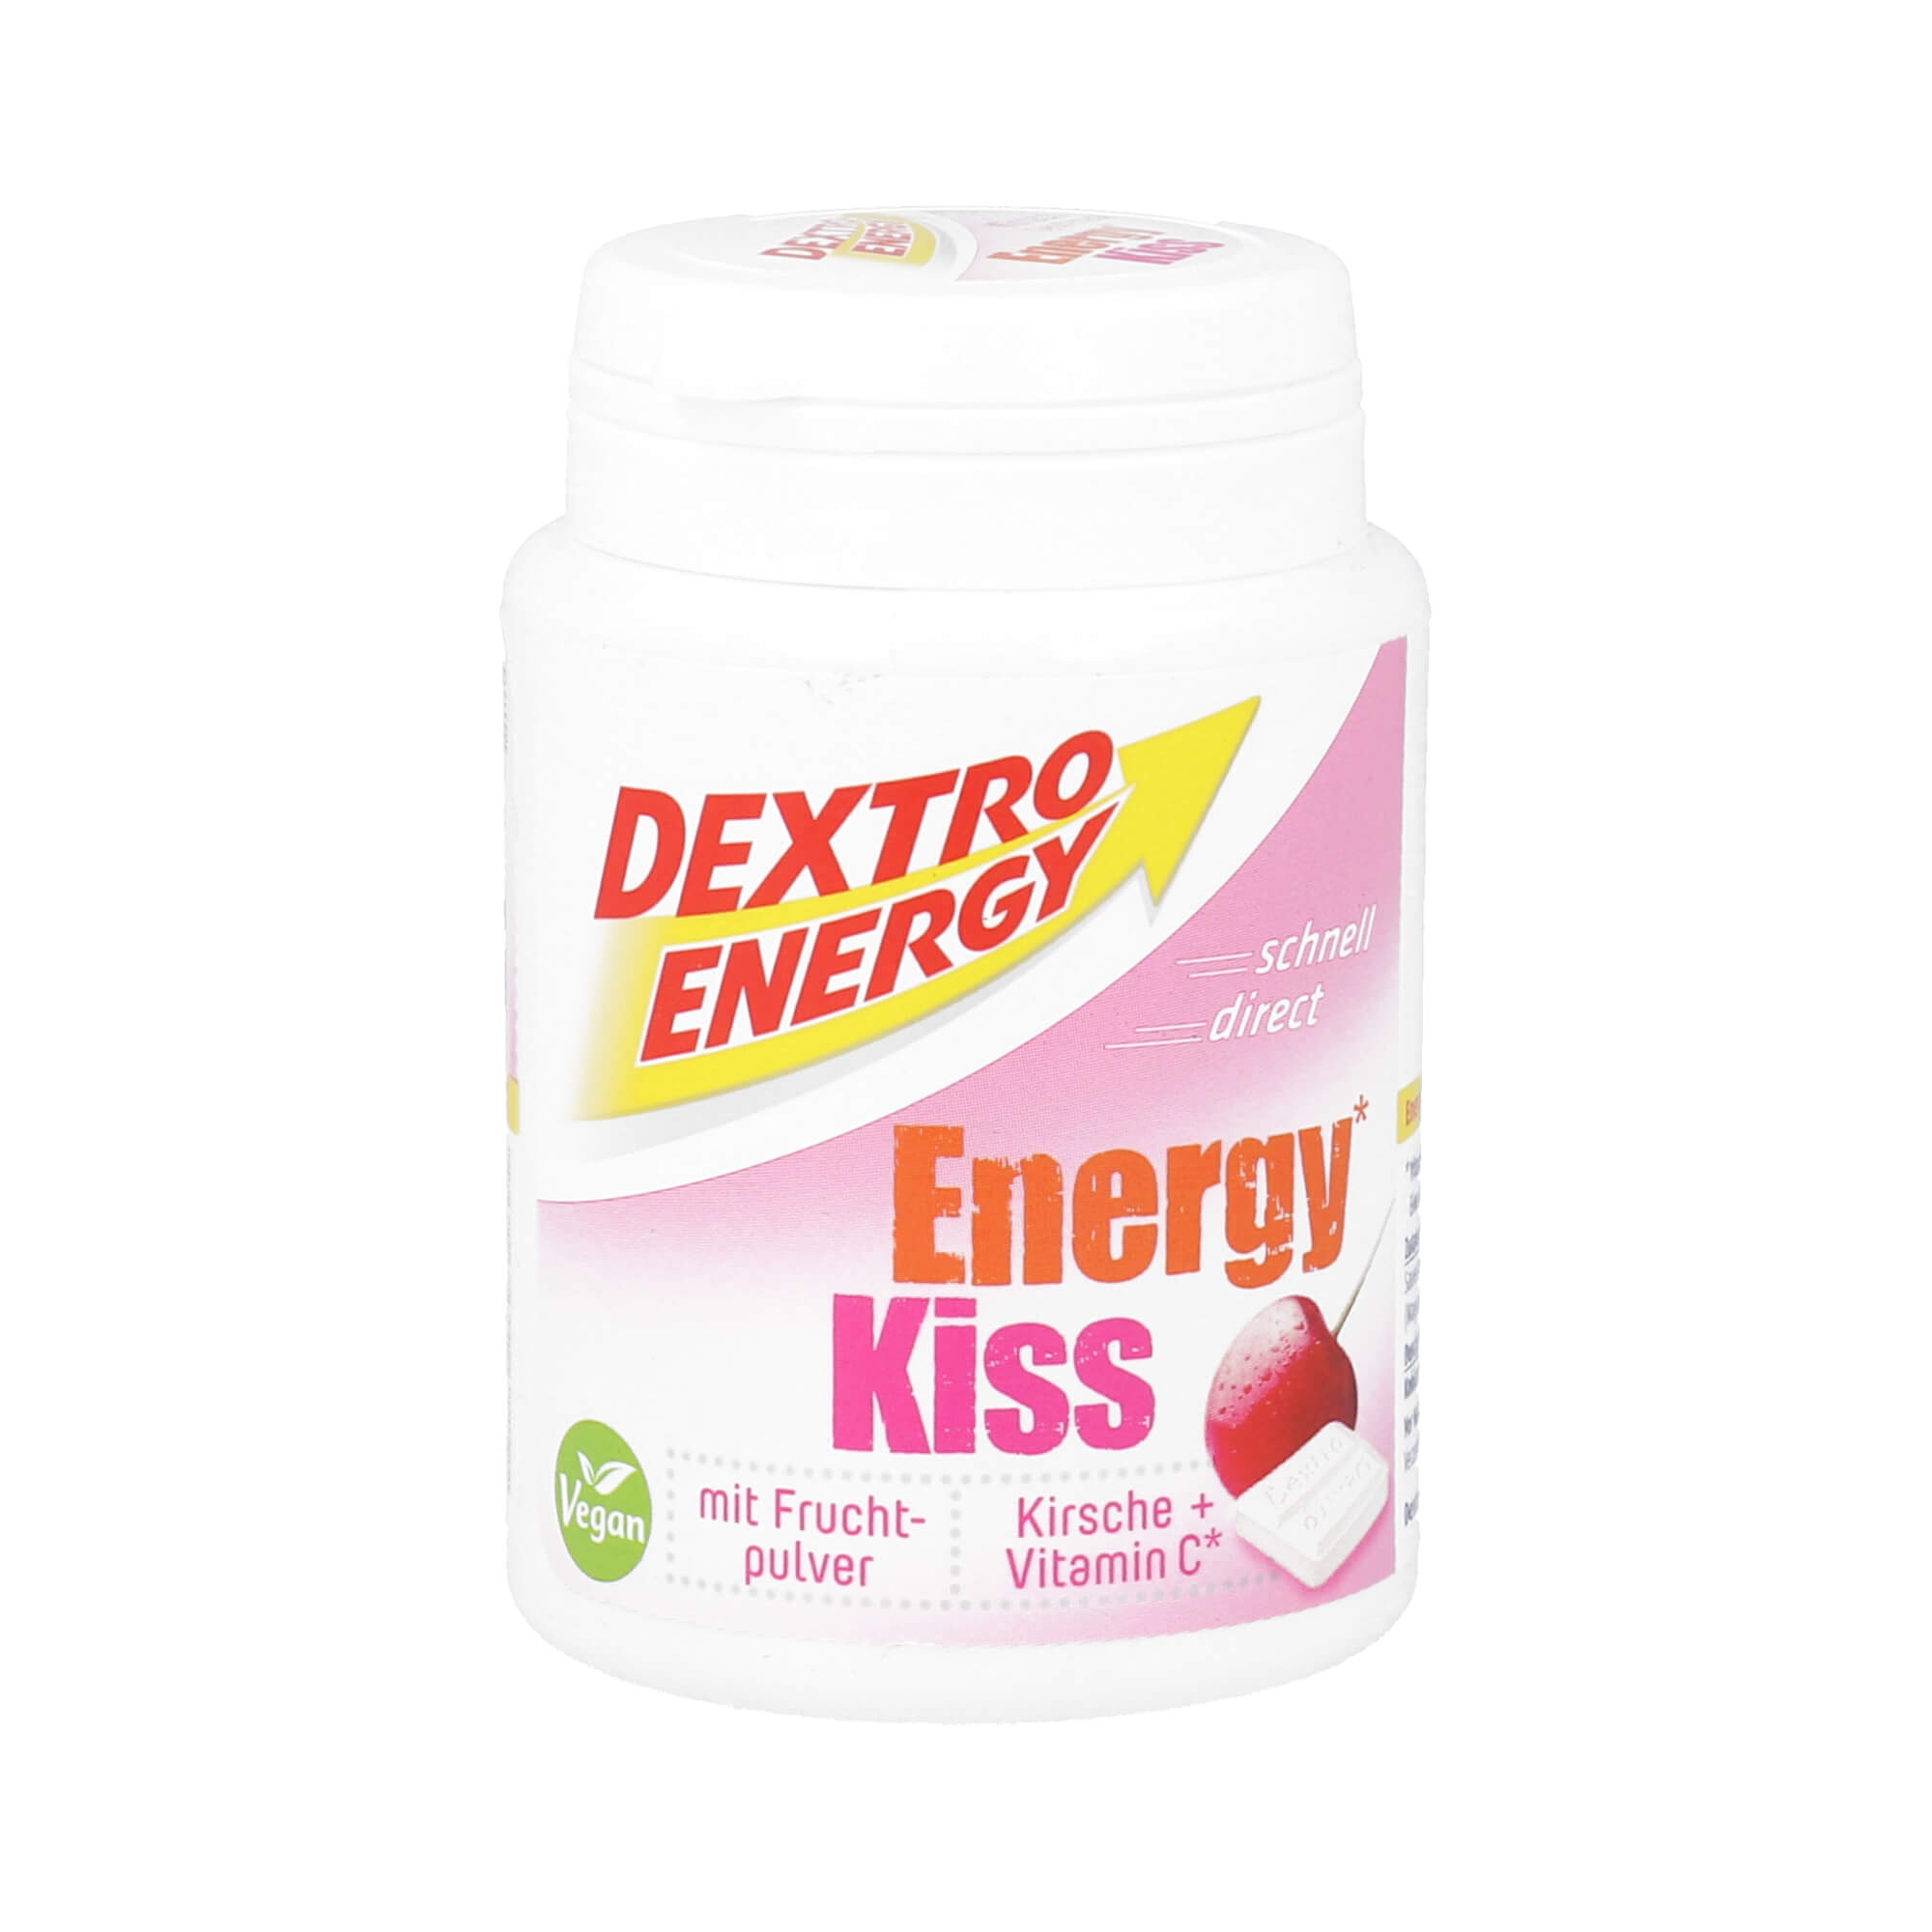 Energieliefernde Dextrosetäfelchen mit Kirsch-Geschmack und Vitamin C.